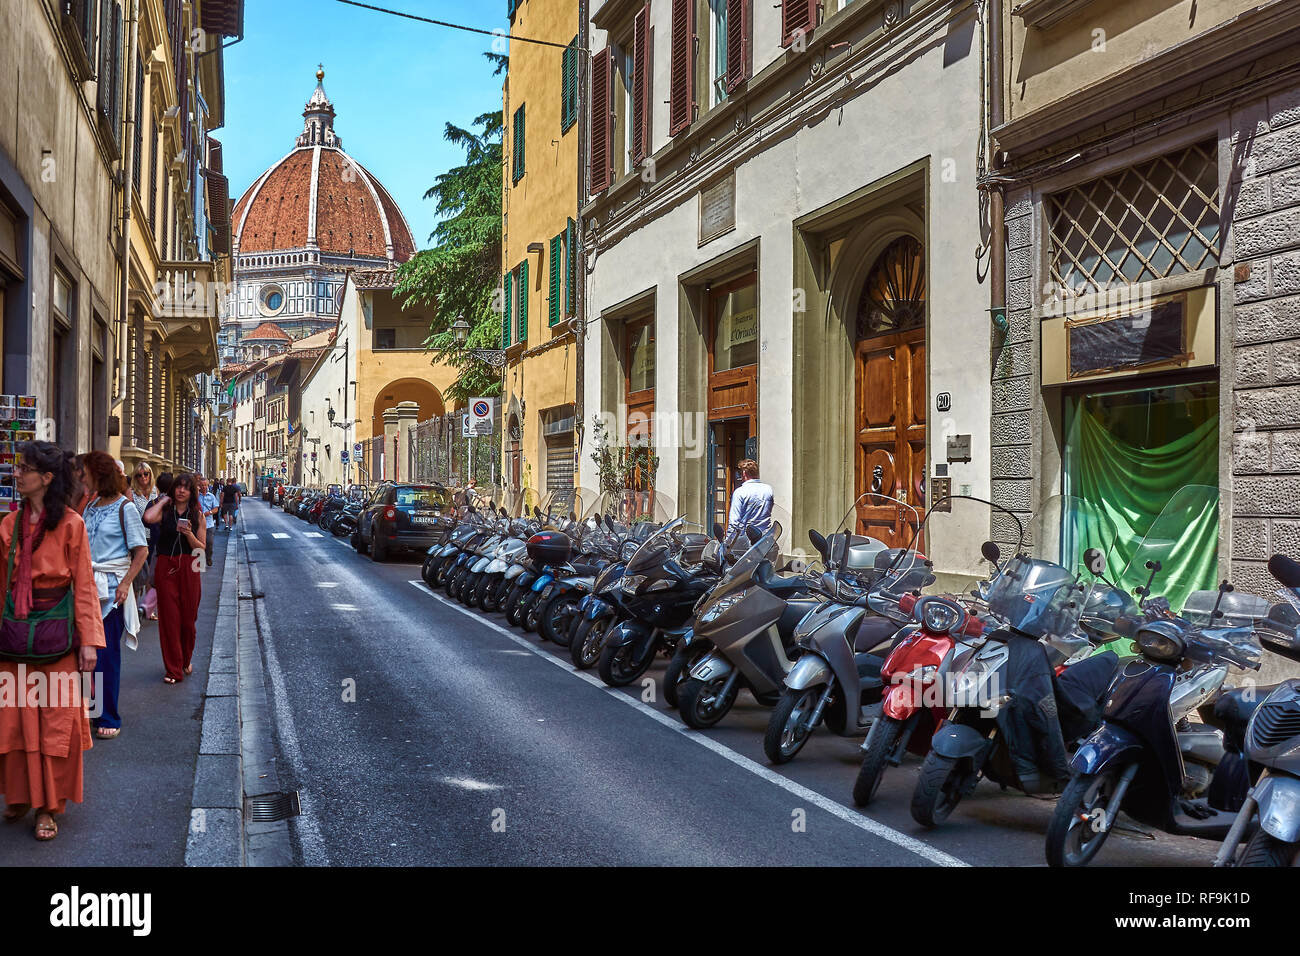 Moto parcheggiate su strada stretta a Firenze, Italia, e circondato da vecchi appartamenti, con la Cattedrale di Santa Maria del Fiore in backgroun Foto Stock